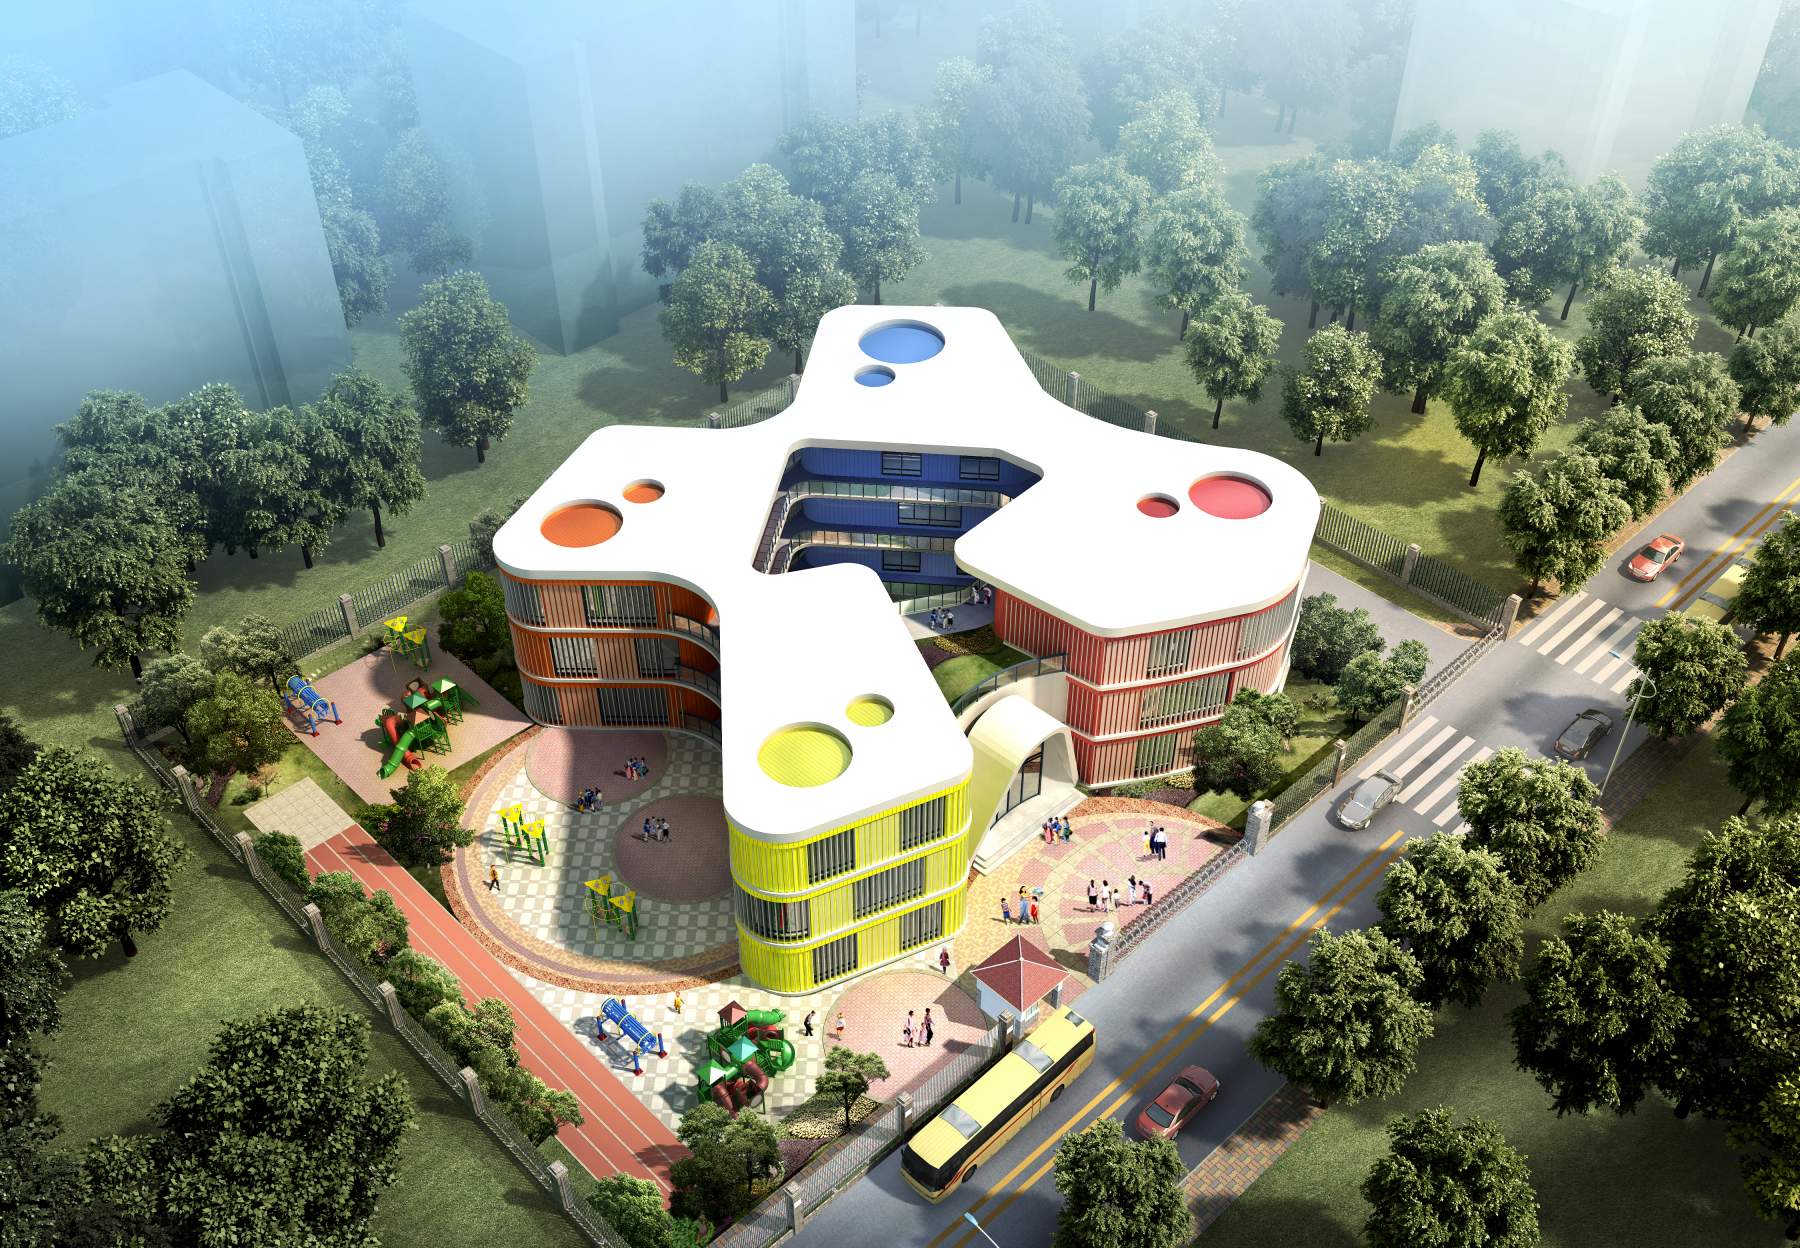 简单几何勾勒而成的六边形“蜂巢”：杭州浦乐幼儿园杨家墩分园 / goa大象设计 | 建筑学院